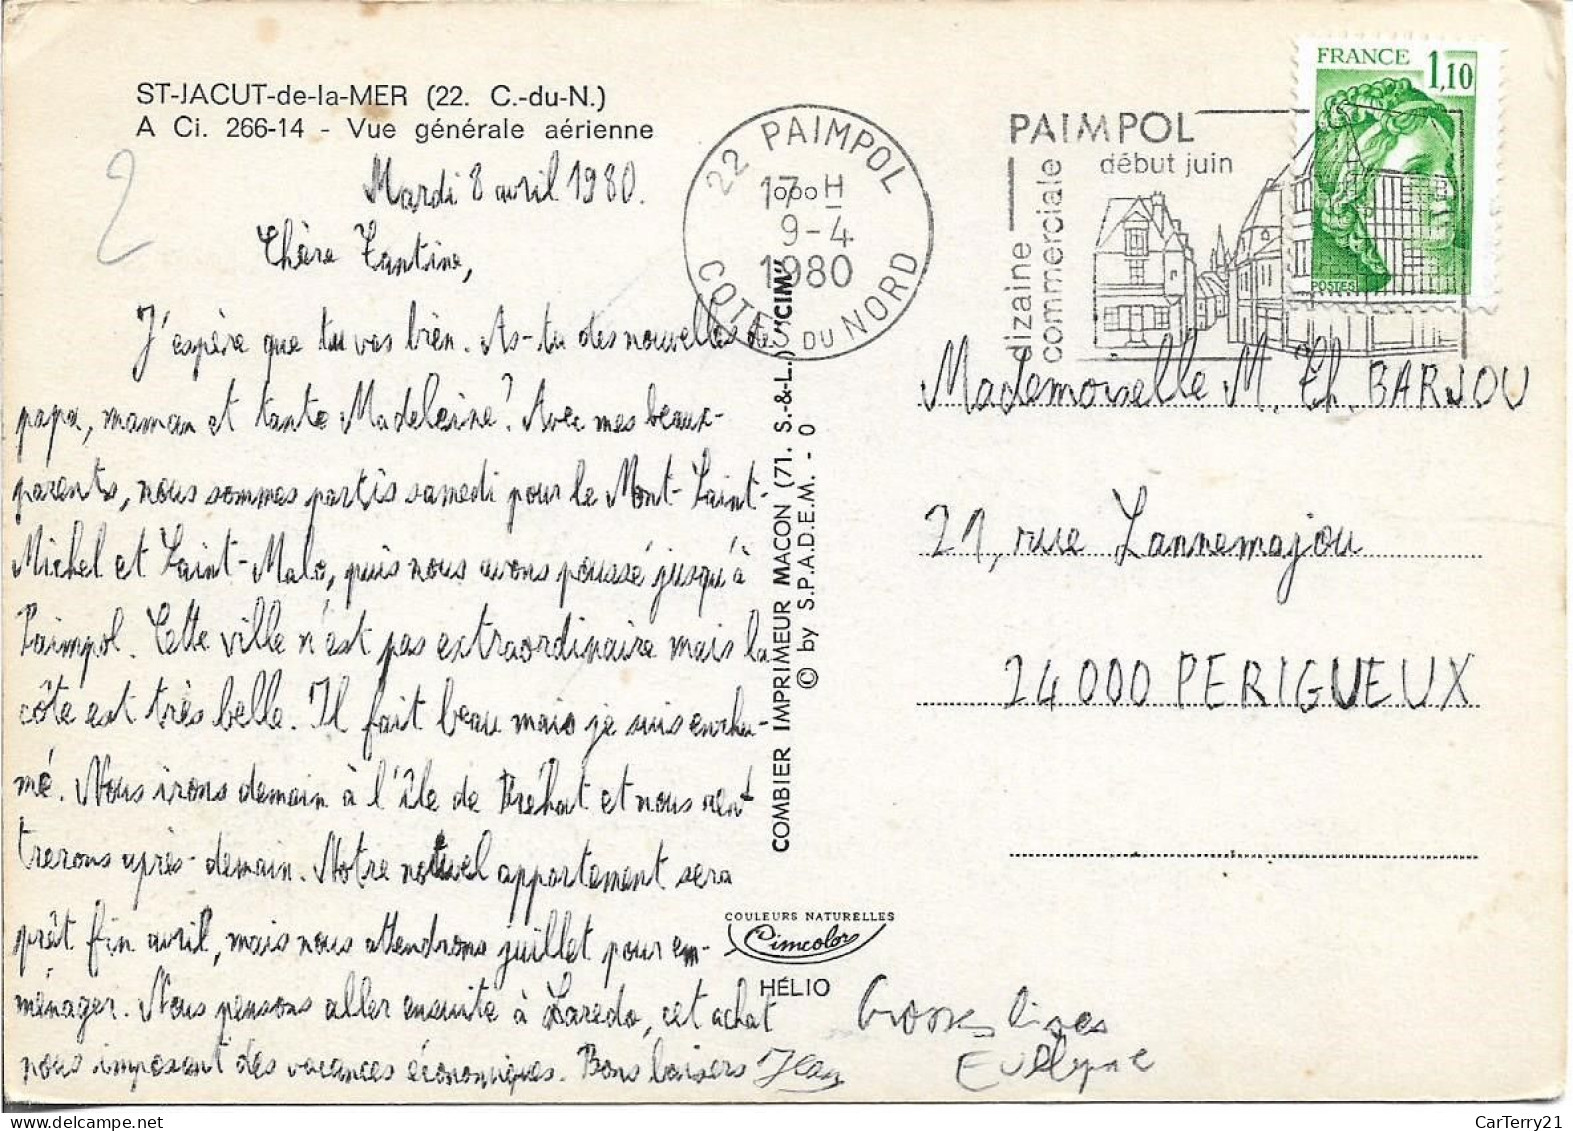 22. SAINT JACUT DE LA MER. VUE GENERALE AERIENNE. 1980. - Saint-Jacut-de-la-Mer